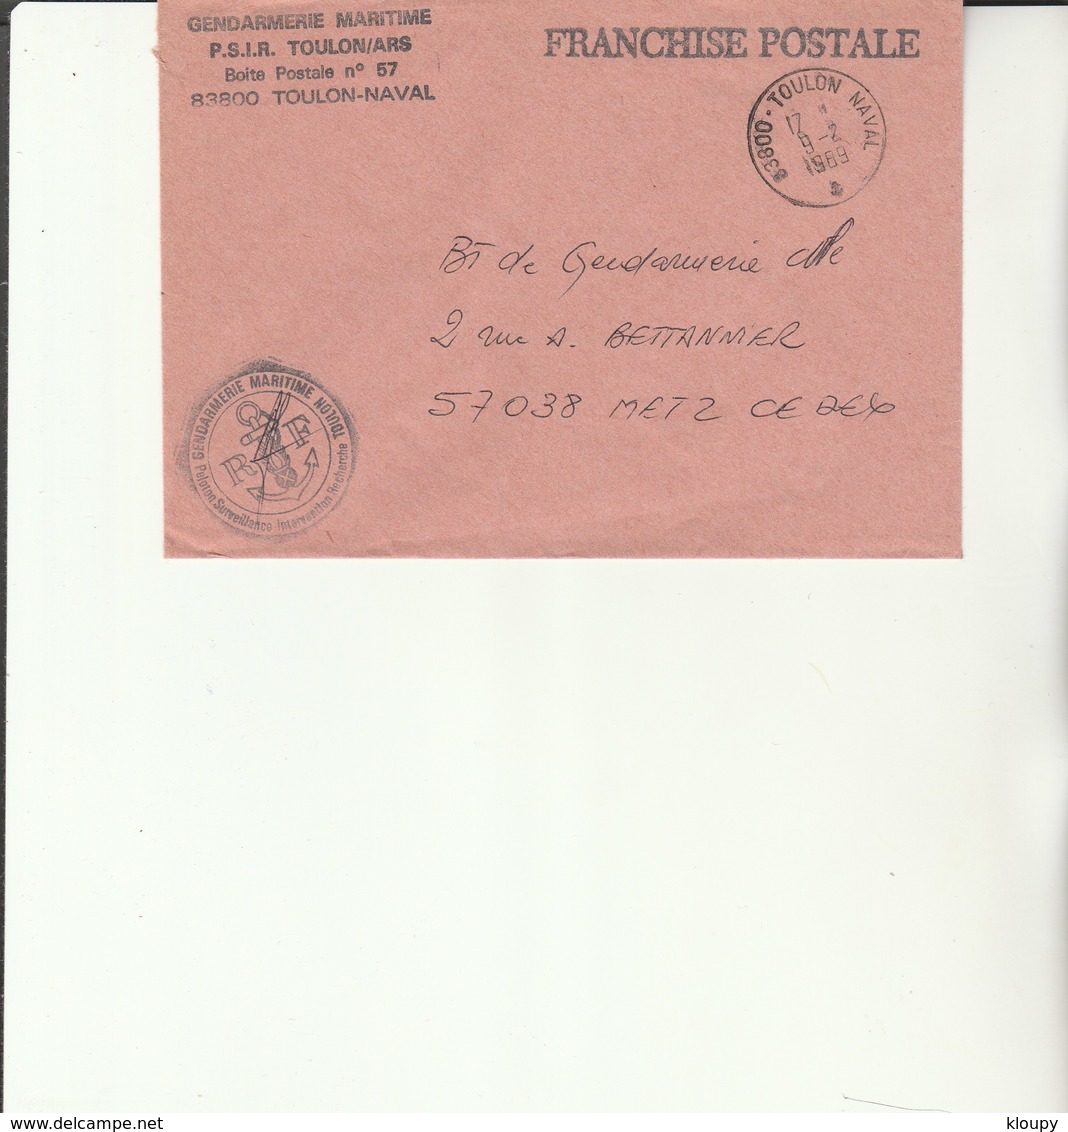 L 3 -  Enveloppe Gendarmerie  Maritime De TOULON  (PSIR) - TOULON NAVAL - Cachets Militaires A Partir De 1900 (hors Guerres)